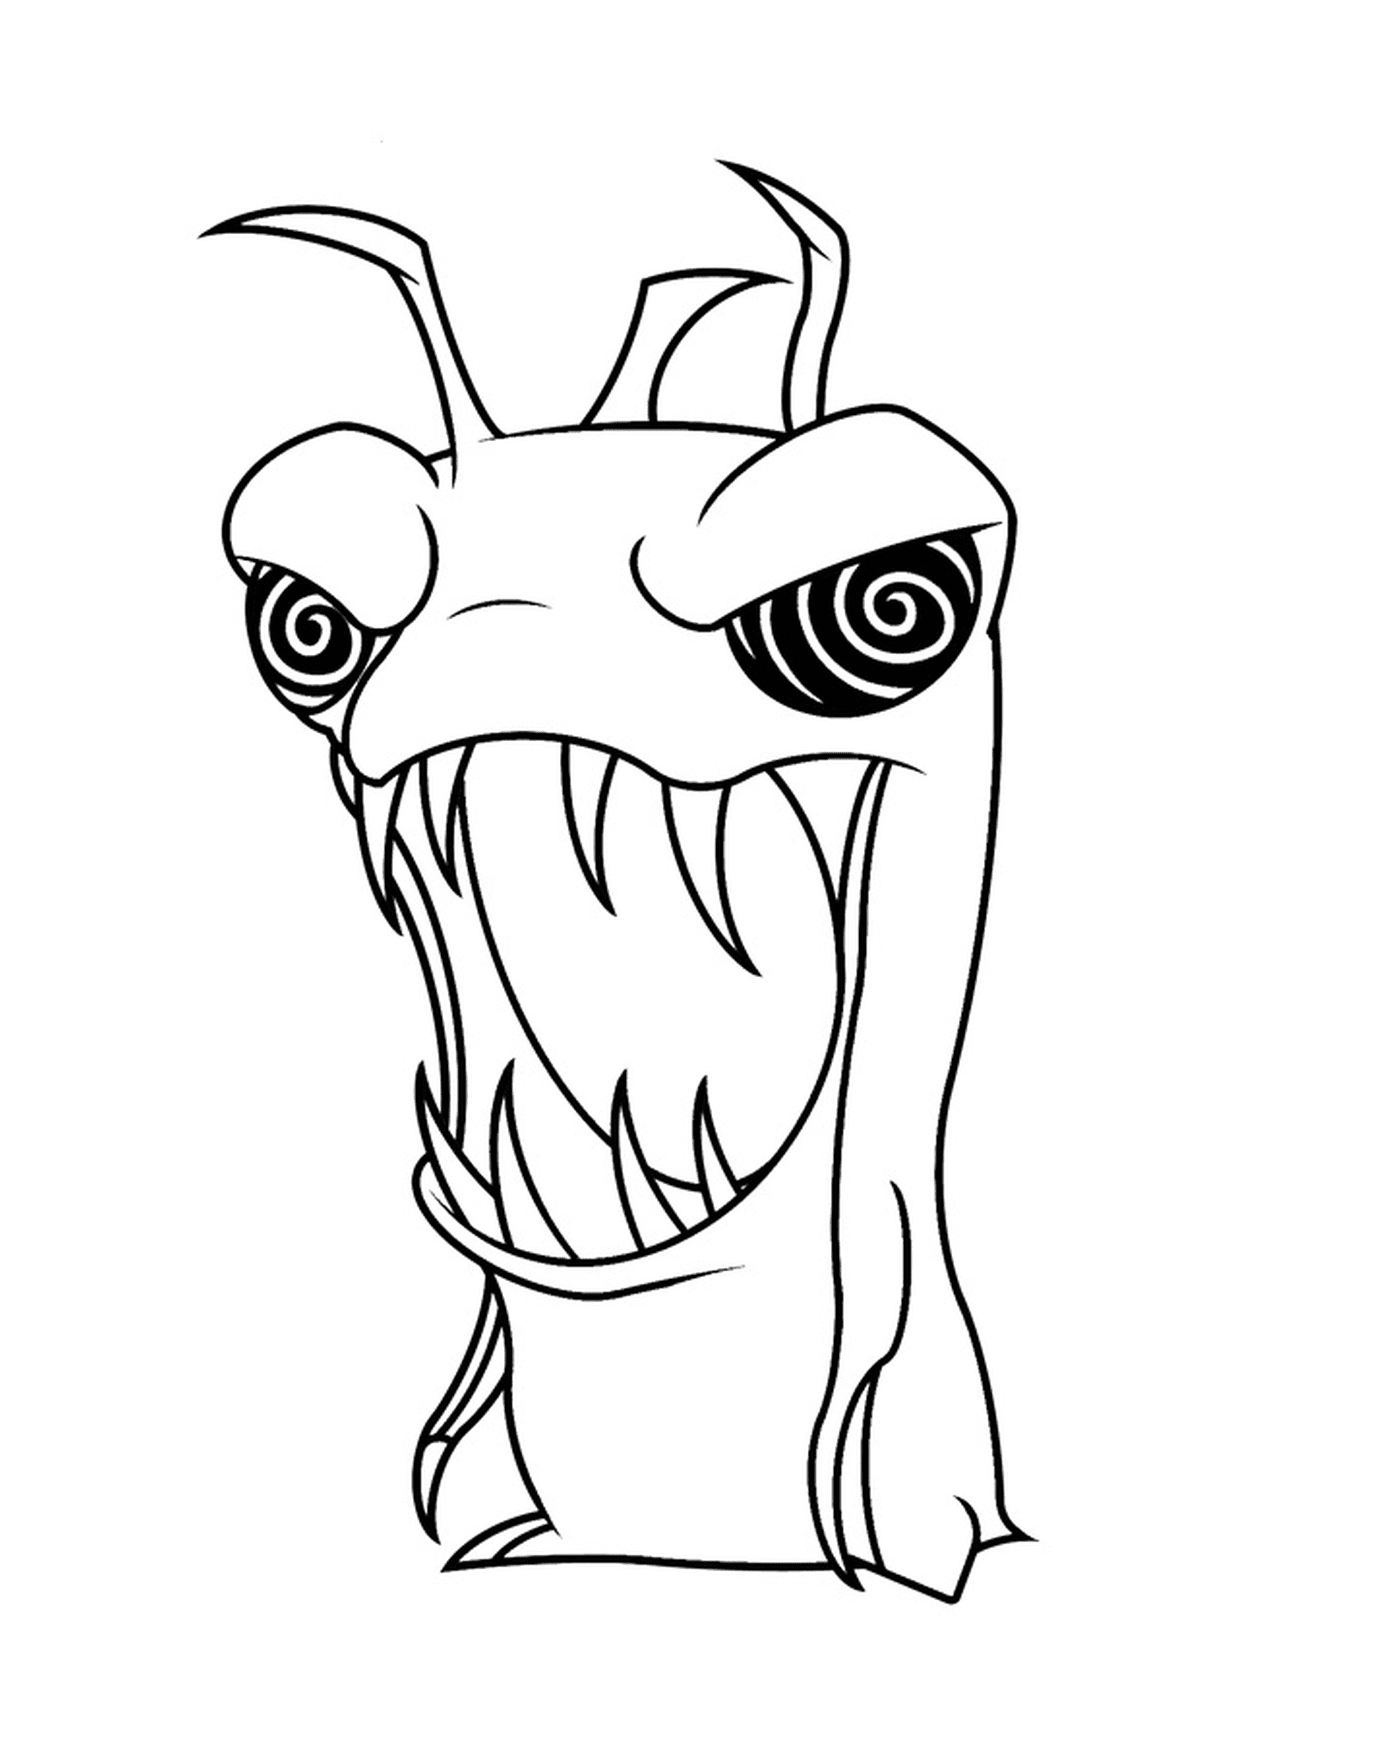  Criptogrif, monstruo de dibujos animados con dientes grandes 